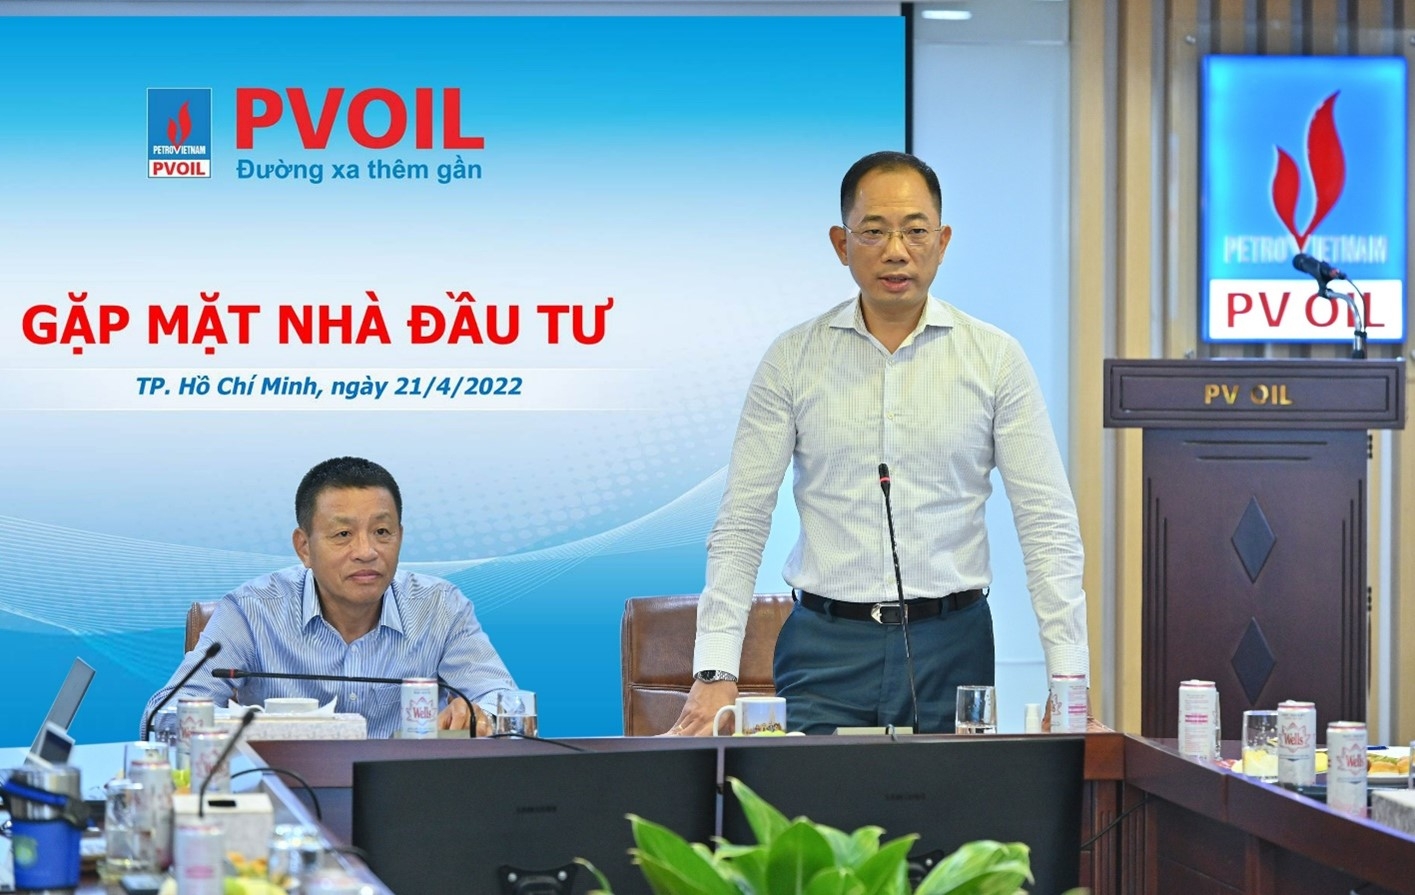 Ông Cao Hoài Dương – Chủ tịch HĐQT PVOIL (bên phải) và ông Đoàn Văn Nhuộm – Tổng Giám đốc PVOIL (bên trái) chủ trì buổi gặp mặt